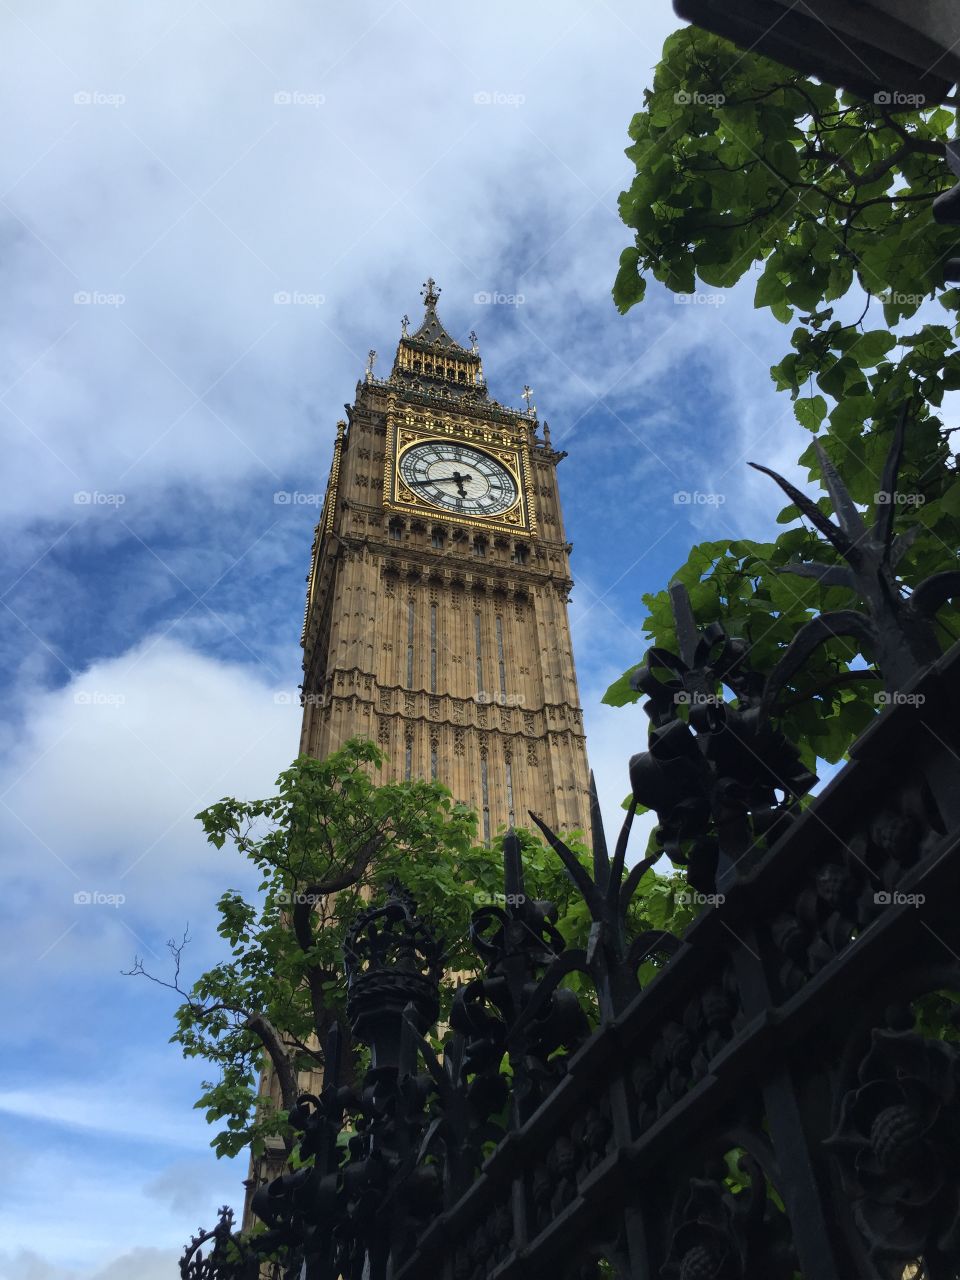 Elizabeth Tower and Big Ben's clock